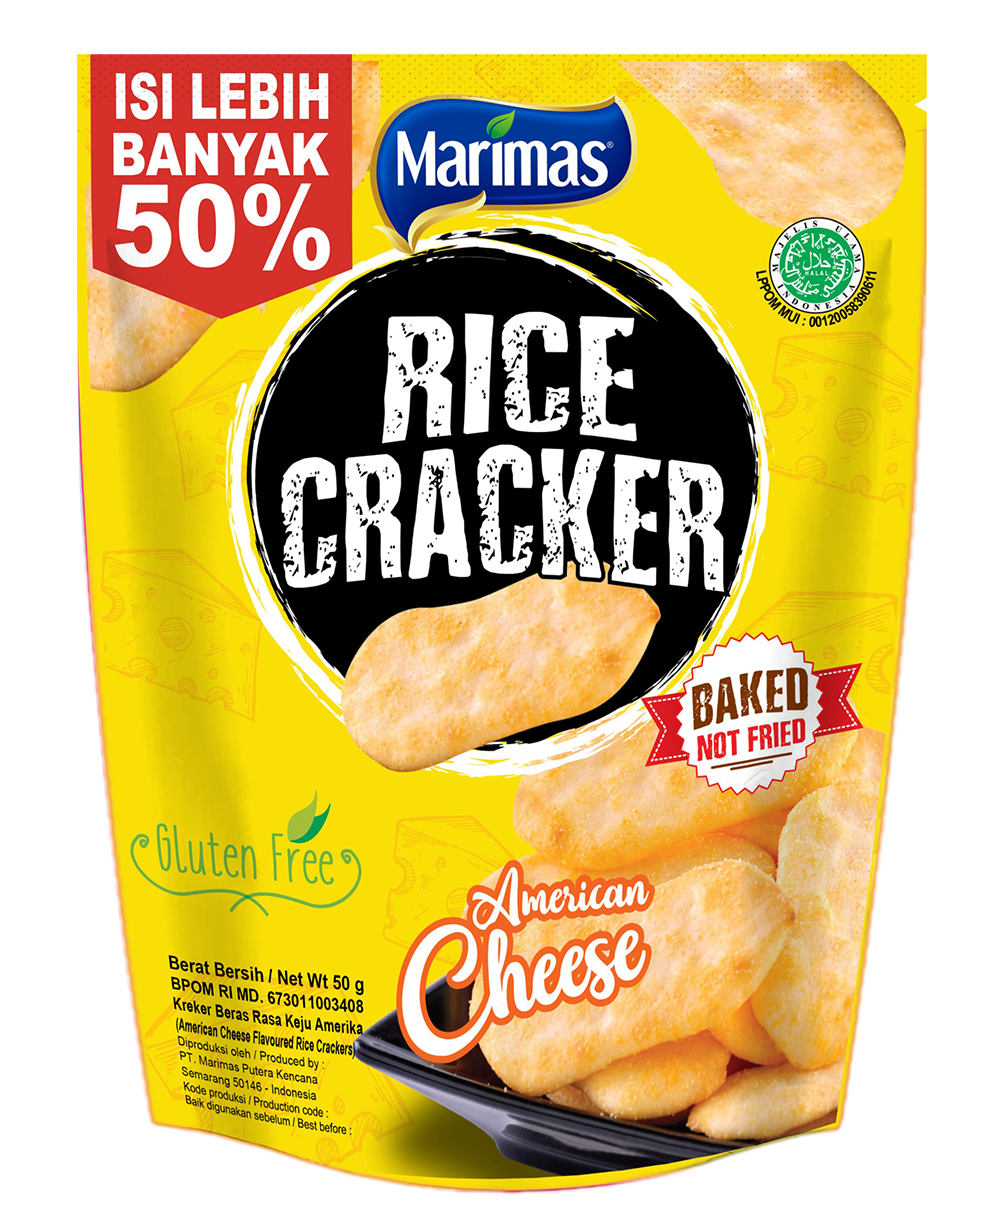 Rice Cracker Cheese